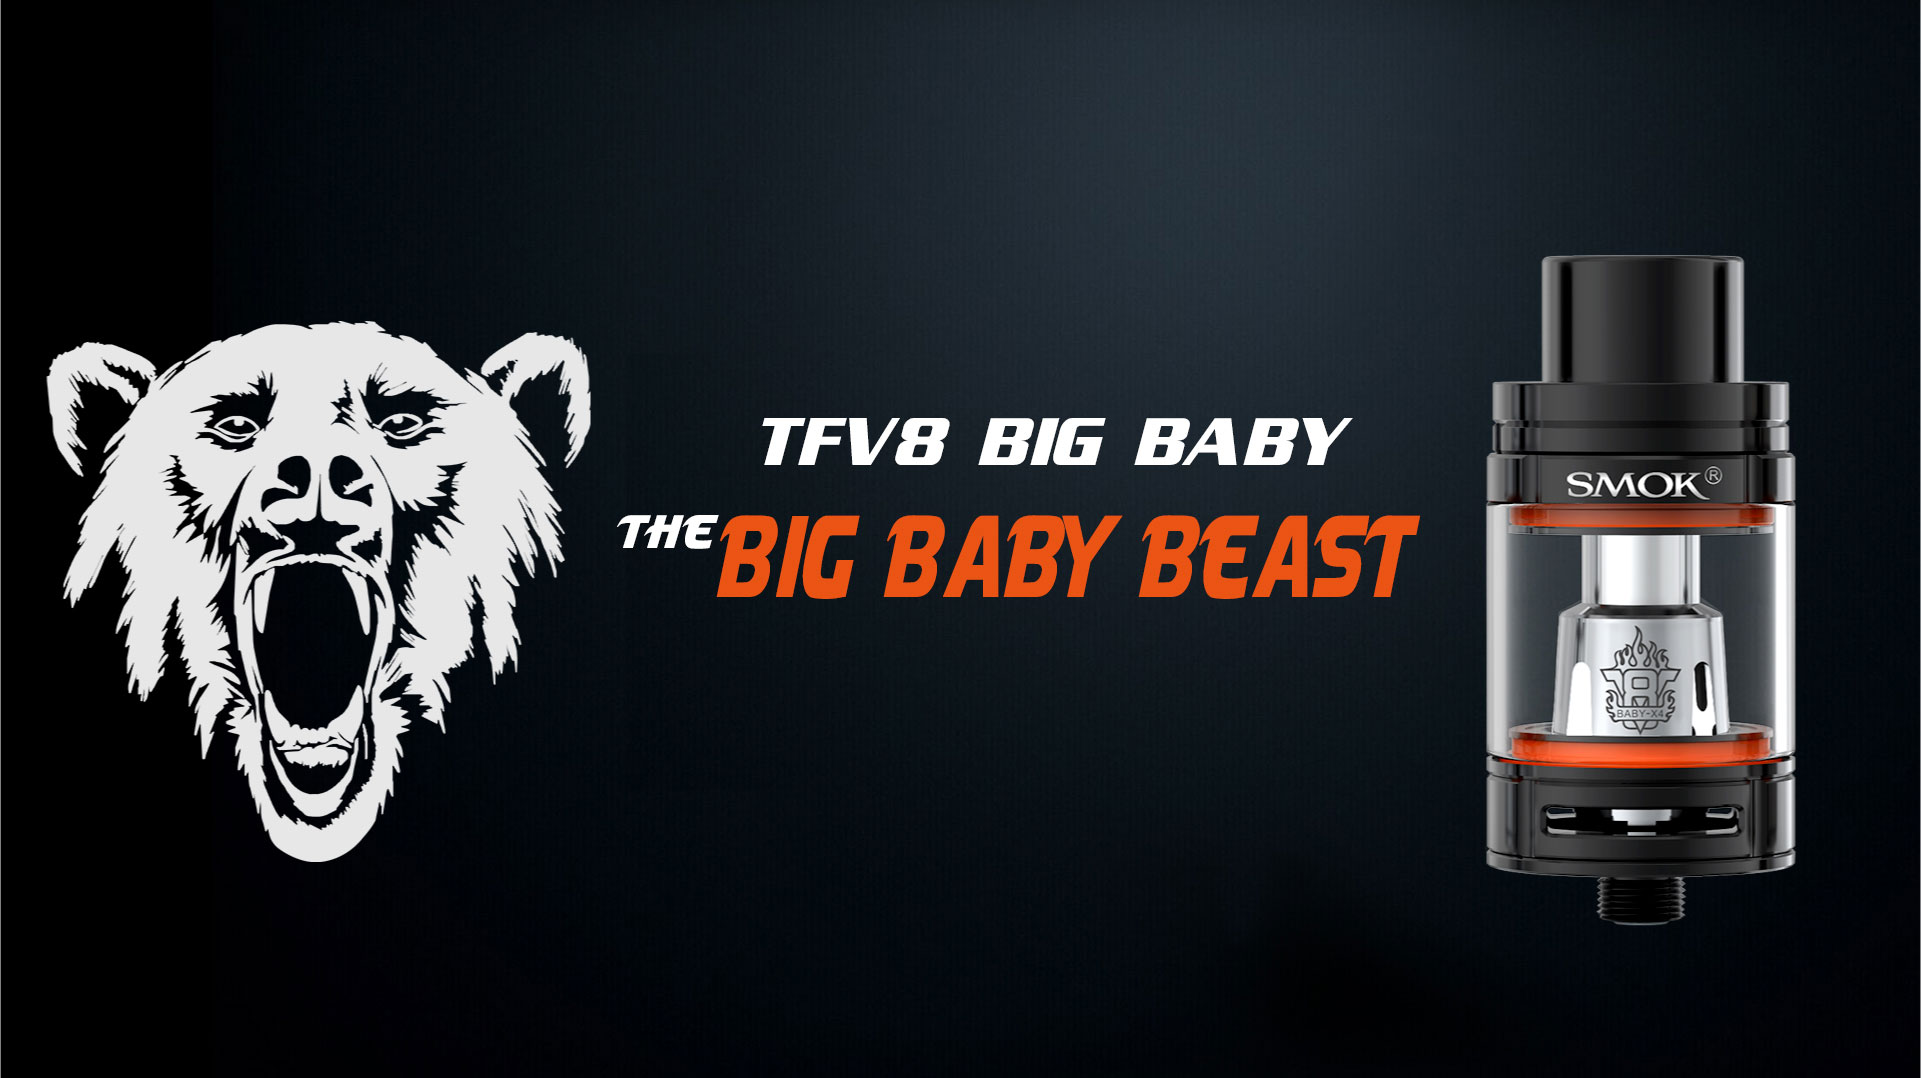 SMOK TFV8 Big Baby